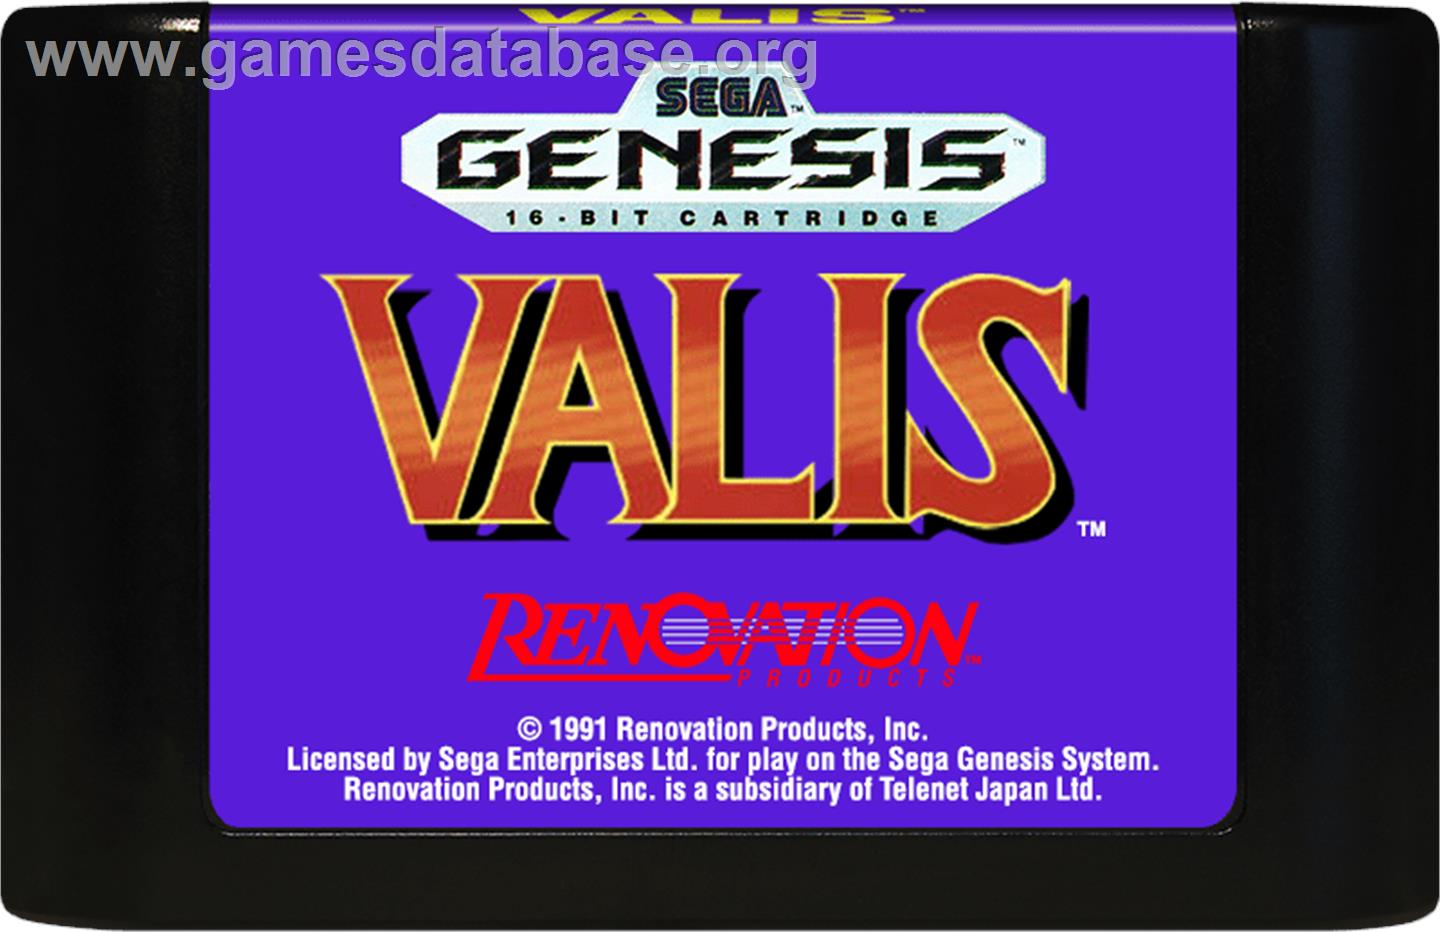 Valis: The Fantasm Soldier - Sega Genesis - Artwork - Cartridge